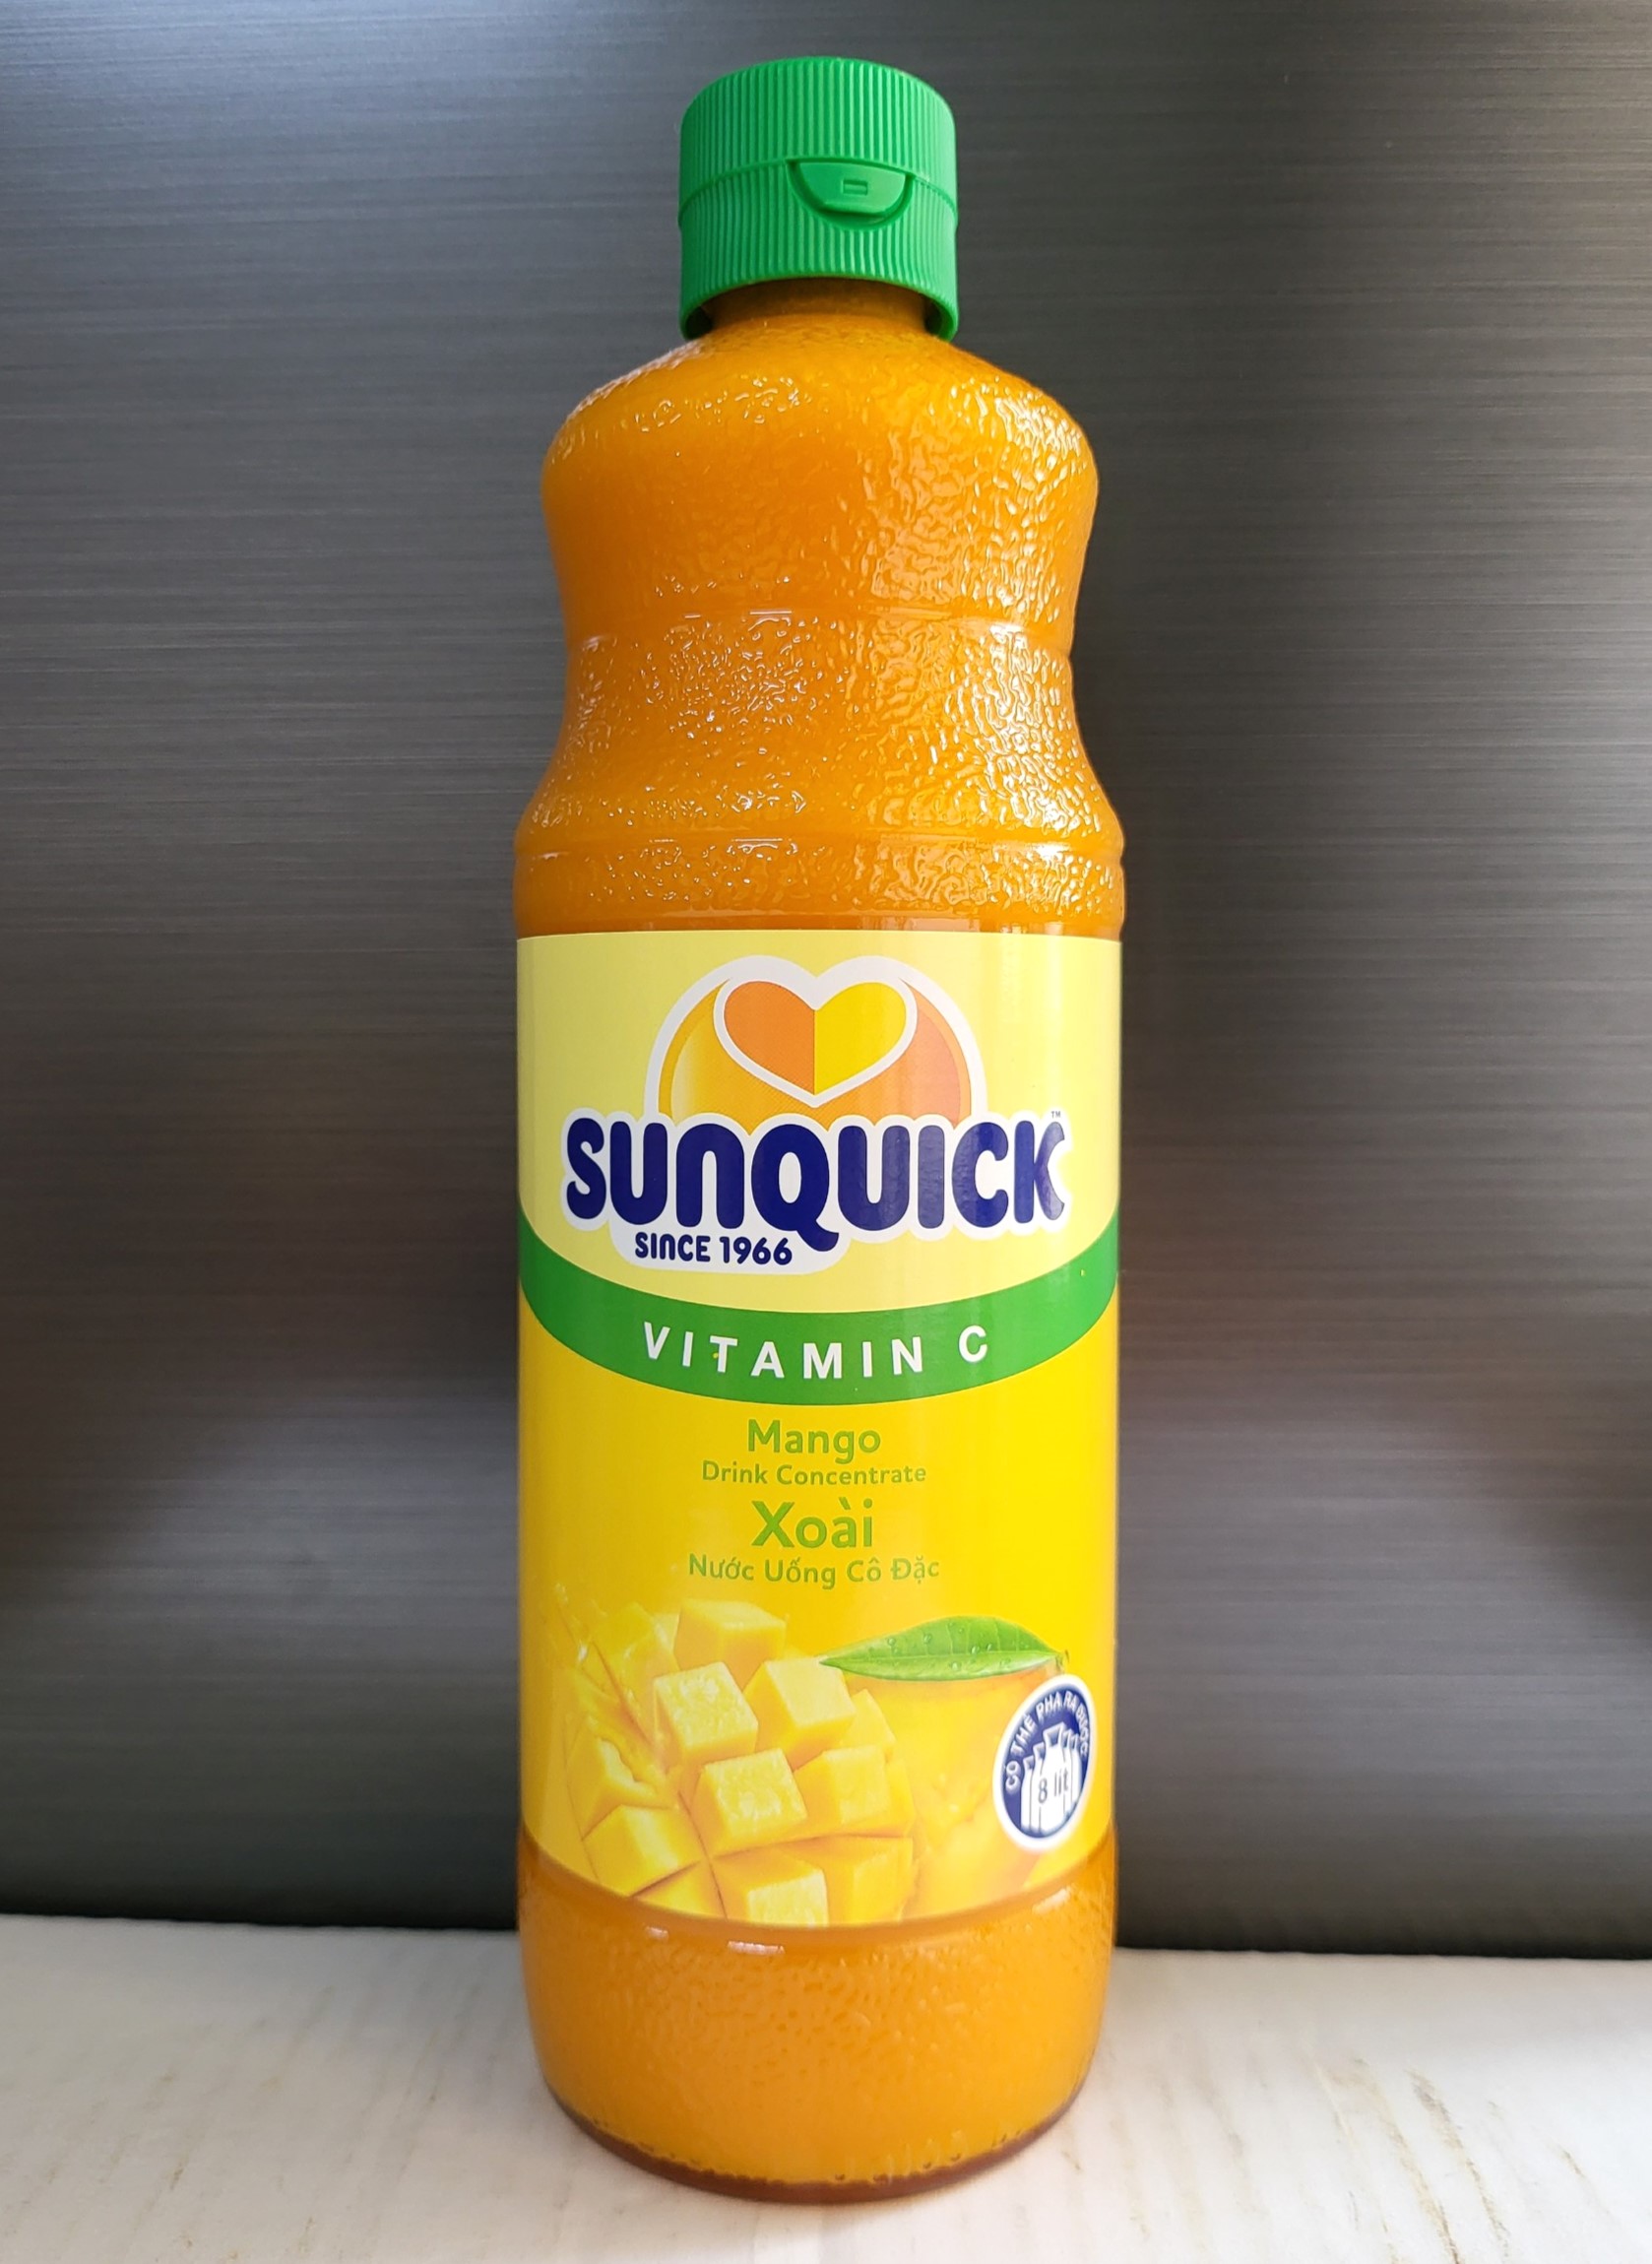 SUNQUICK Chai XOÀI 800ml - NƯỚC ÉP XOÀI CÔ ĐẶC Malaysia Vitamin C Mango